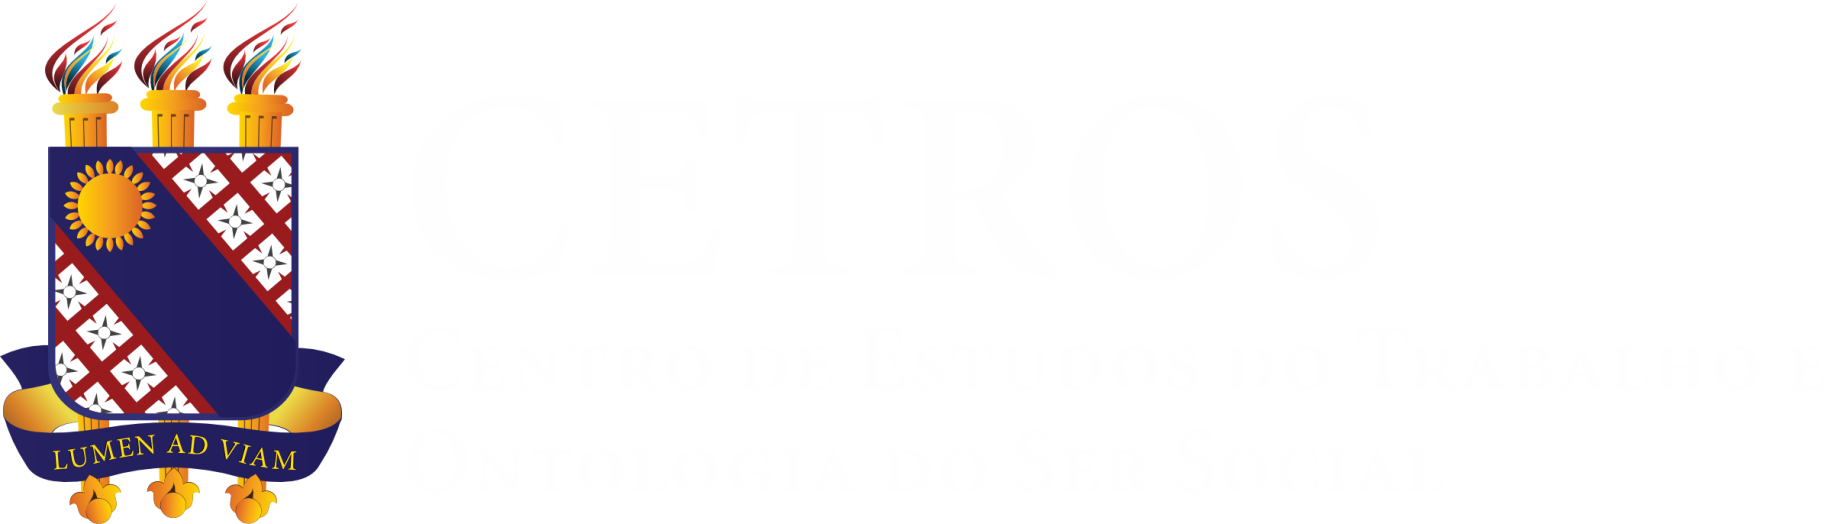 Logo Cetros_white